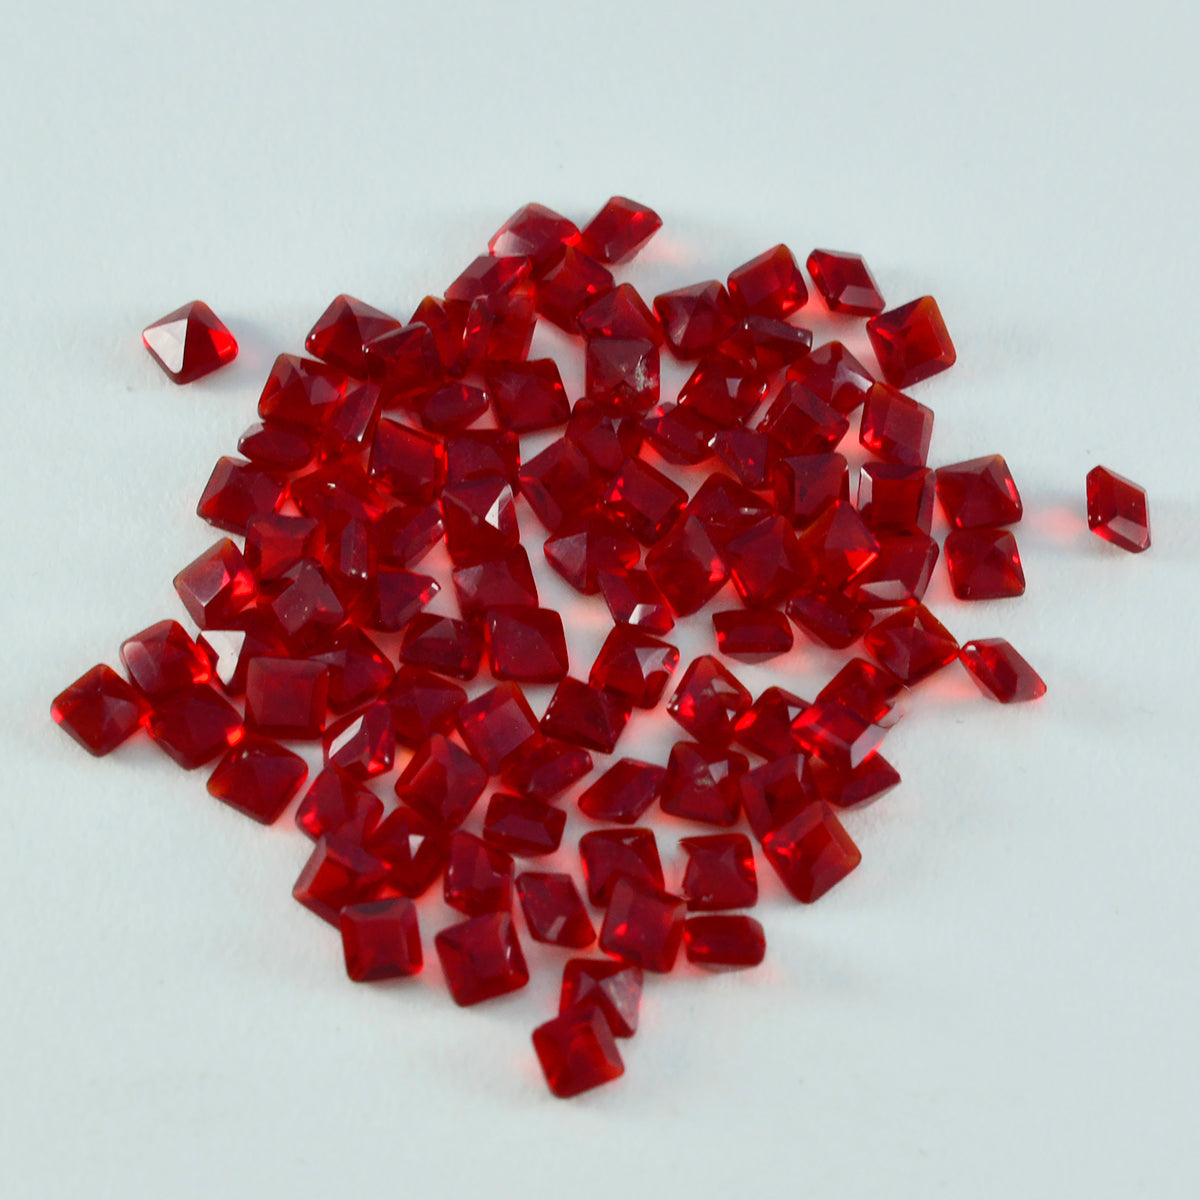 Riyogems 1 pieza rubí rojo cz facetado 3x3mm forma cuadrada piedra suelta de calidad asombrosa